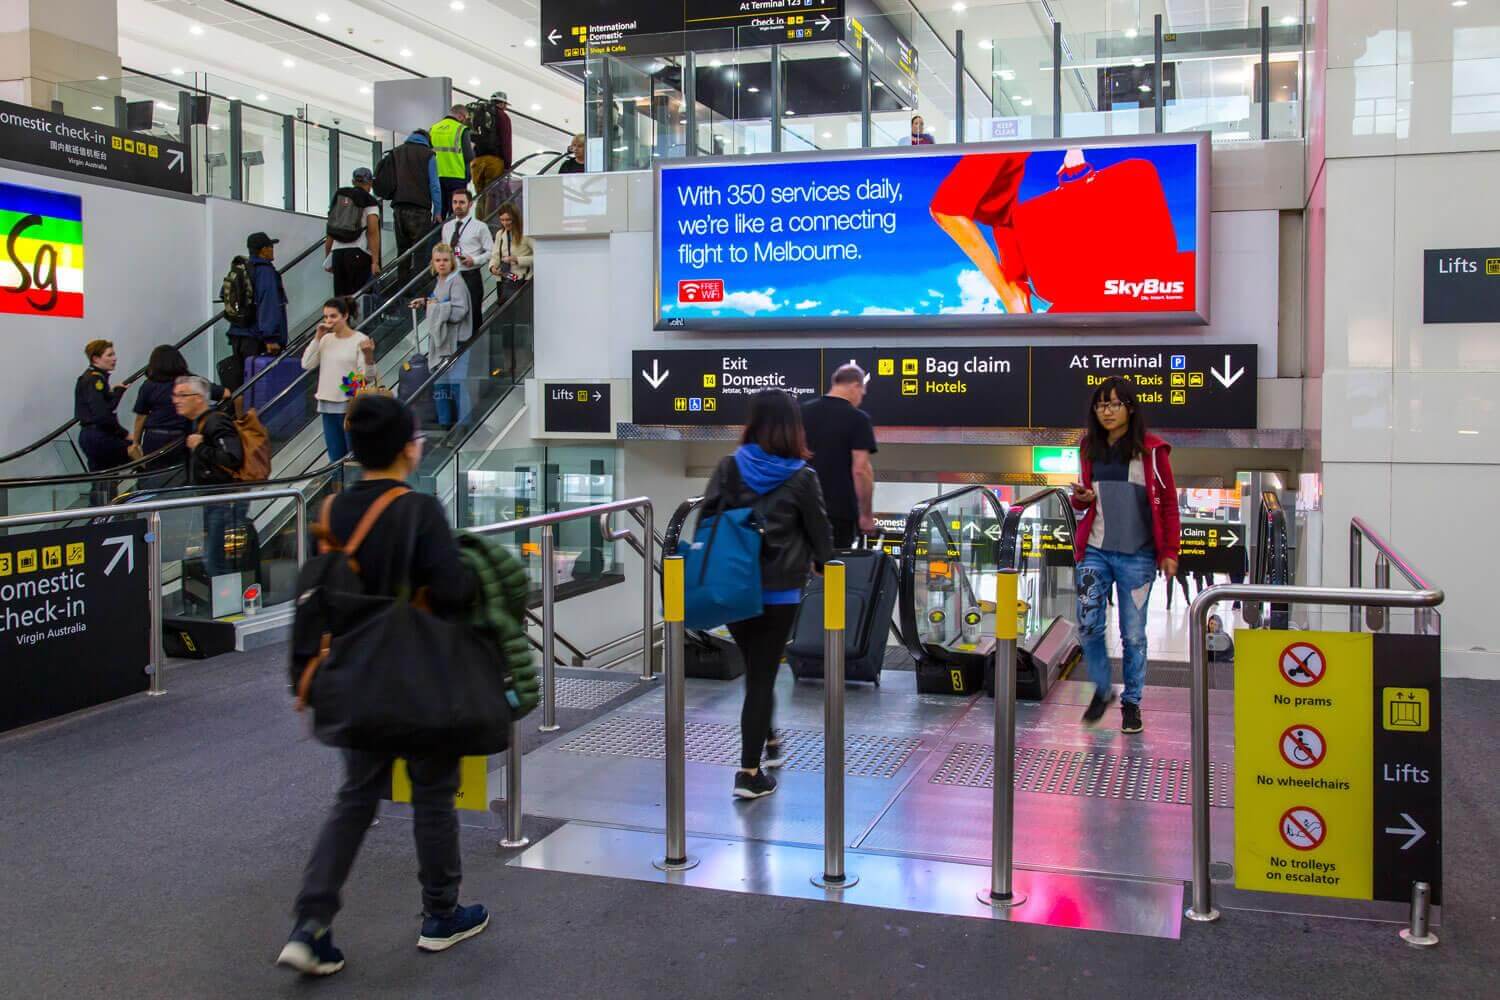 Terminal advertising meets travellers halfway